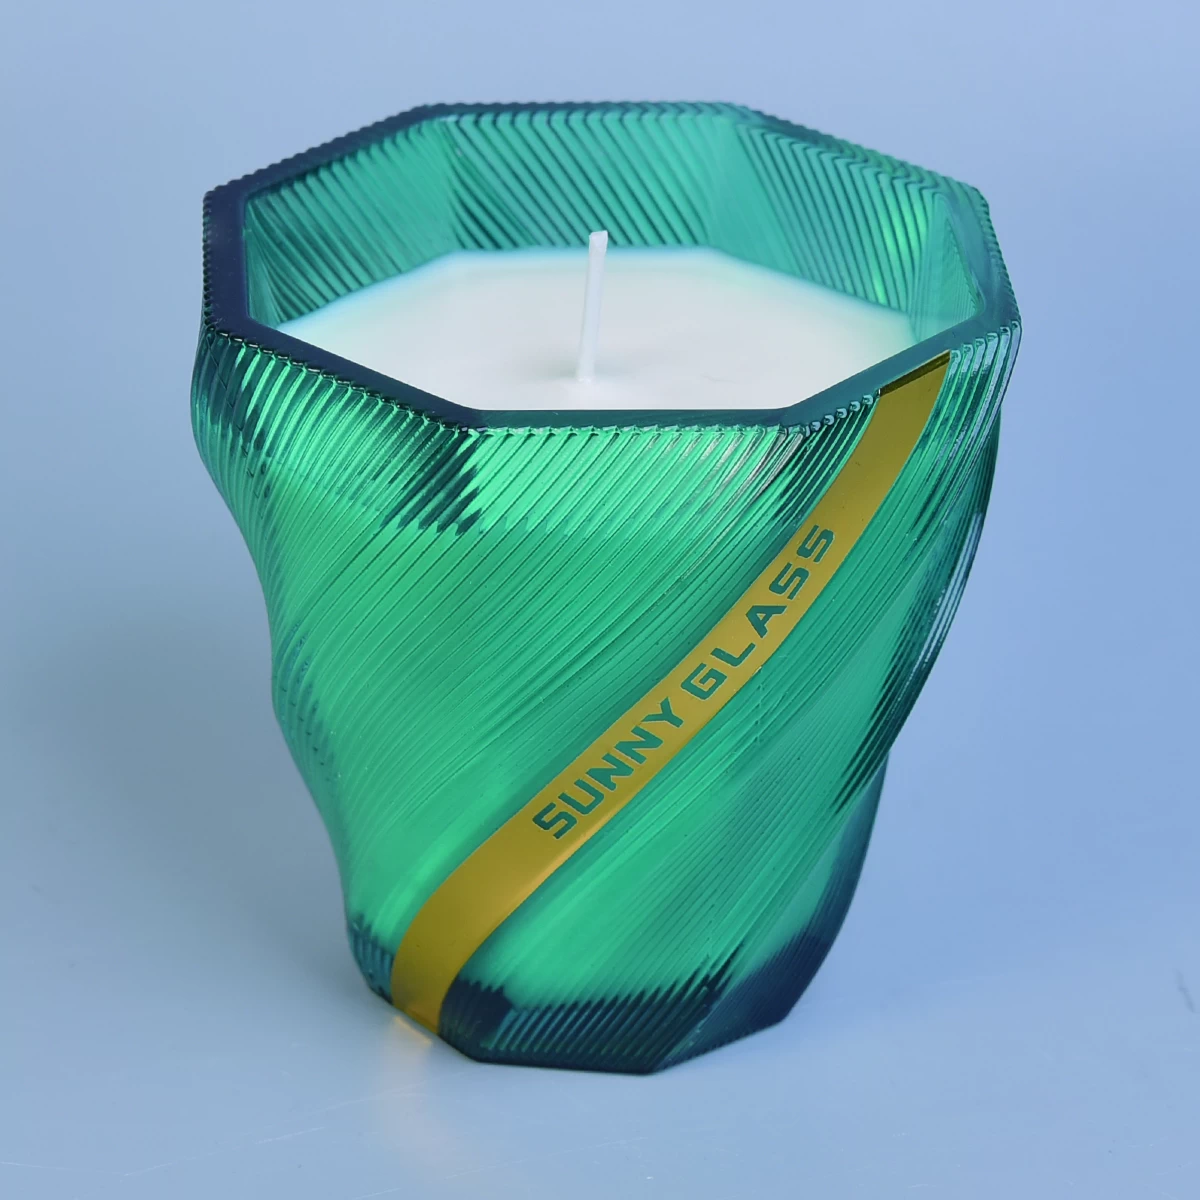 Hot sales tealight geo cut glass candle jar in bulk